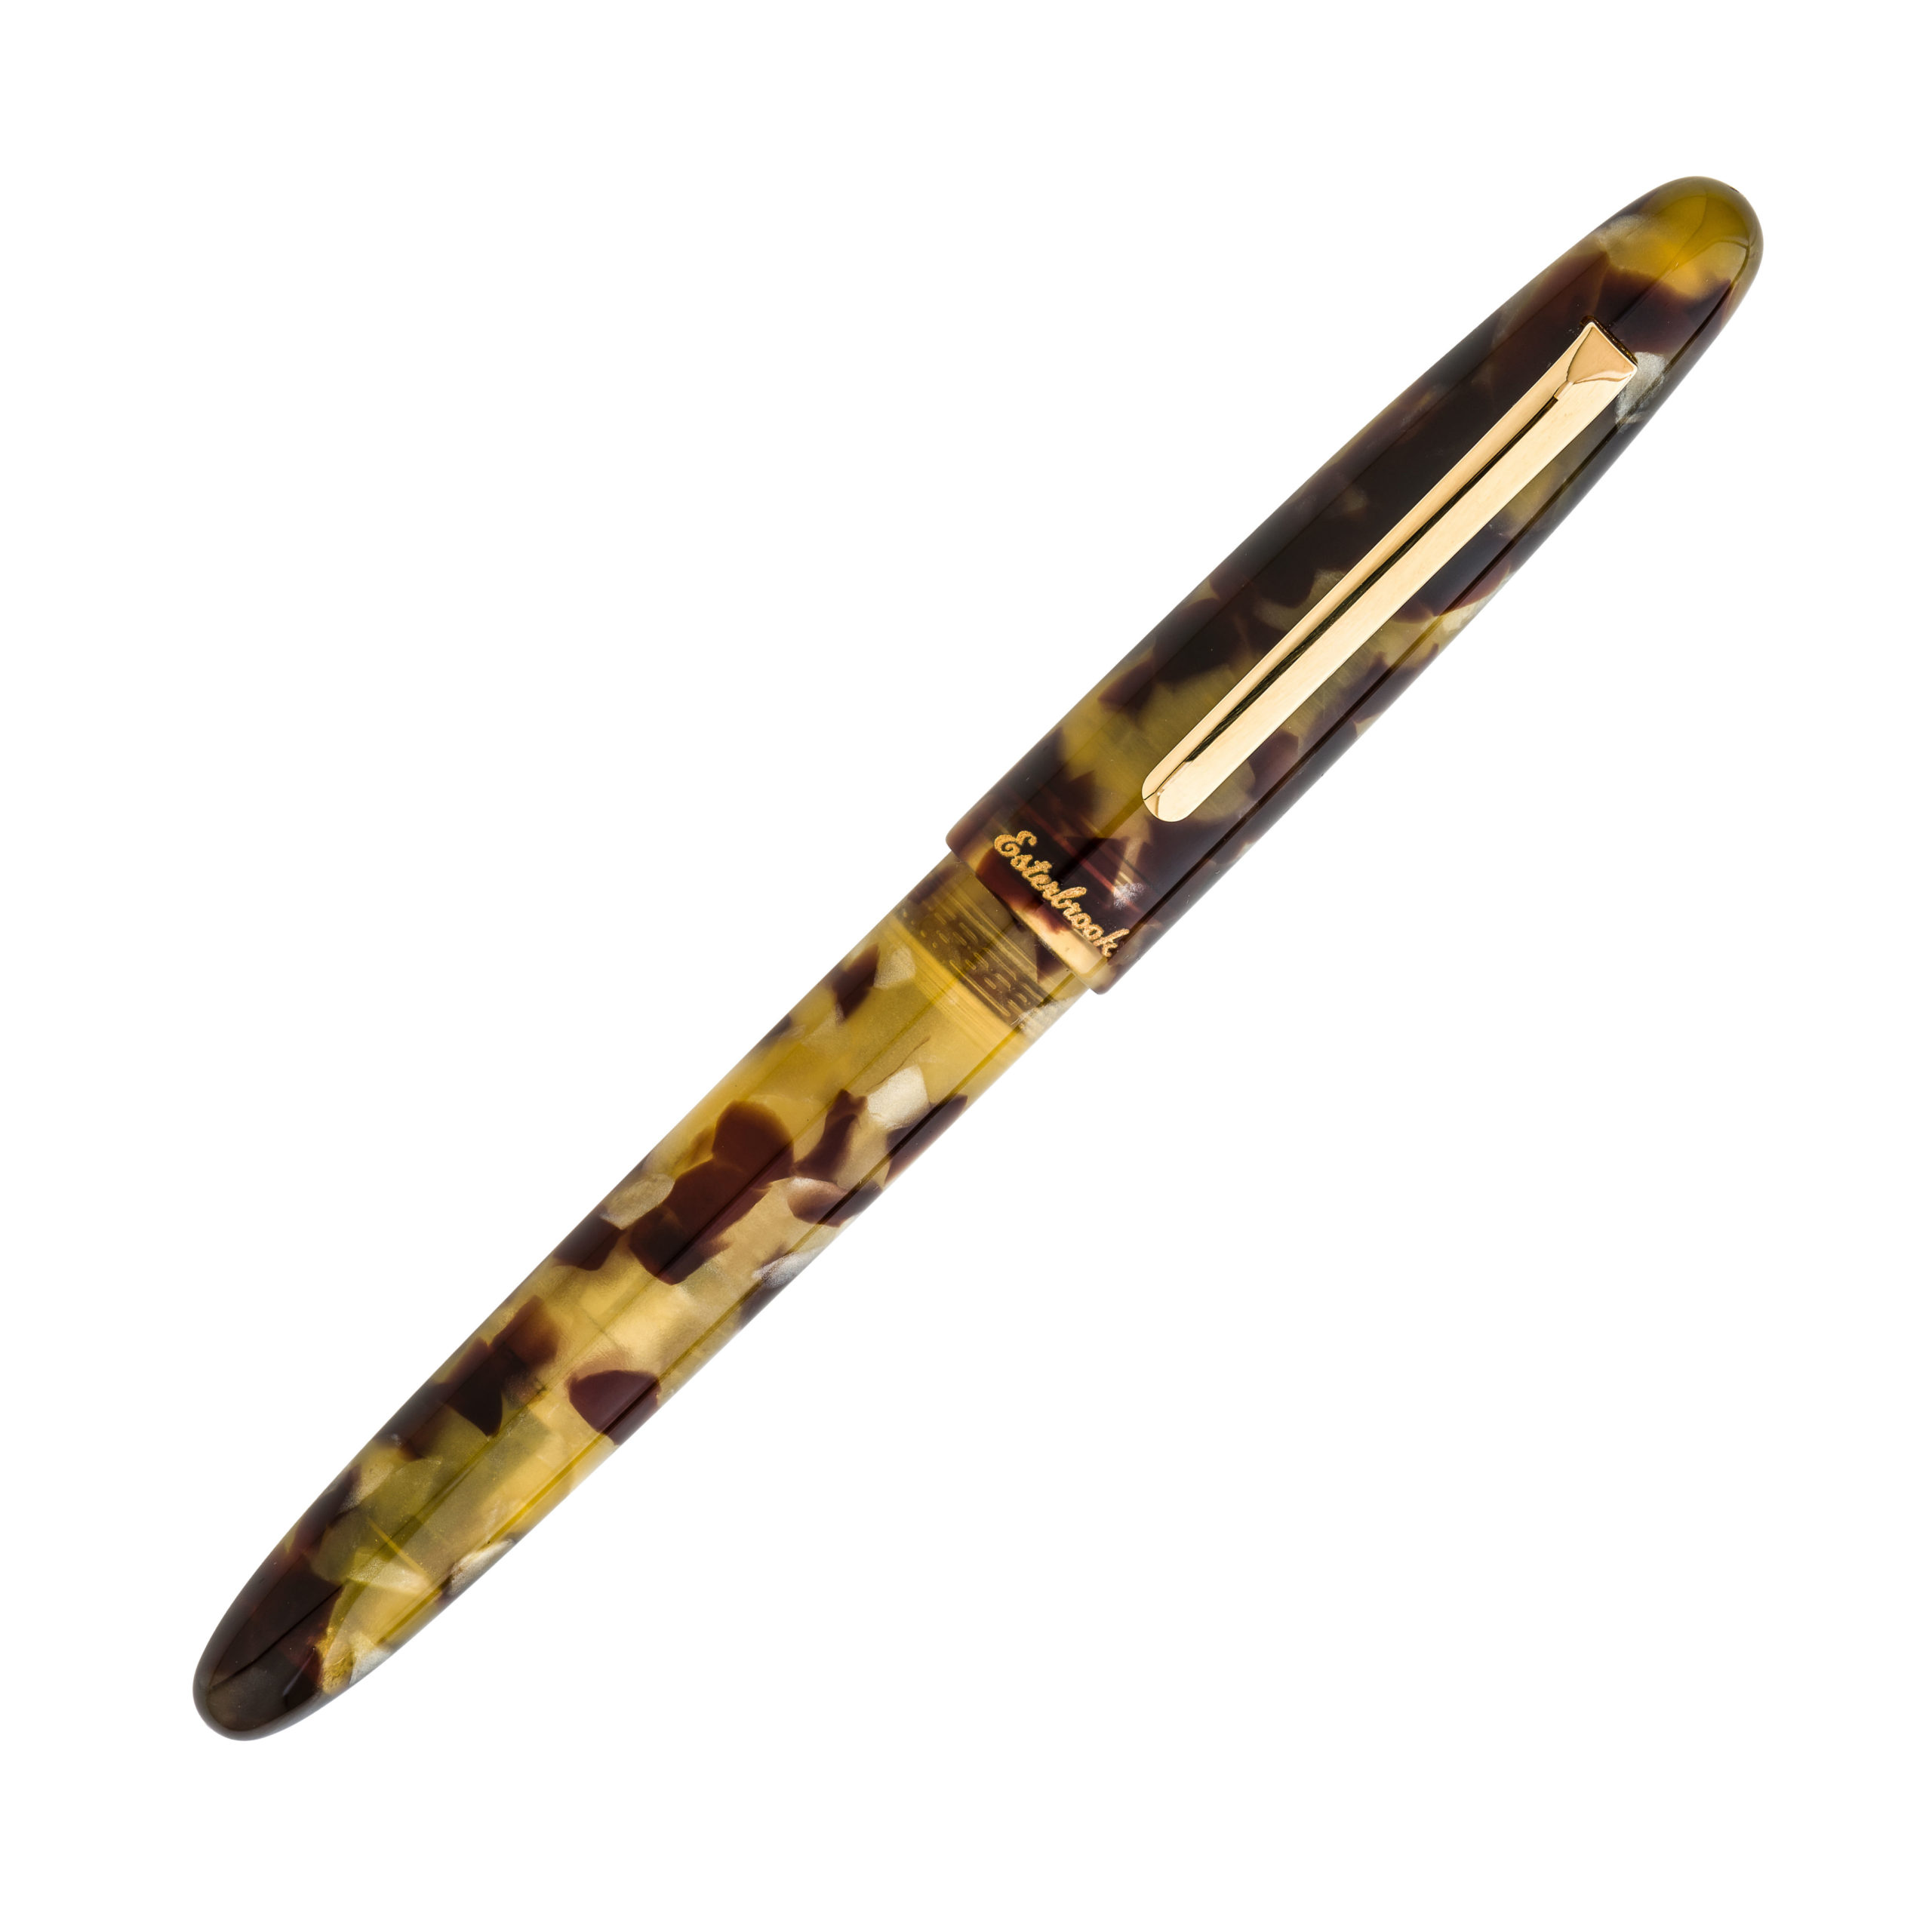 Esterbrook Estie Tortoise Gold Trim Fountain Pen